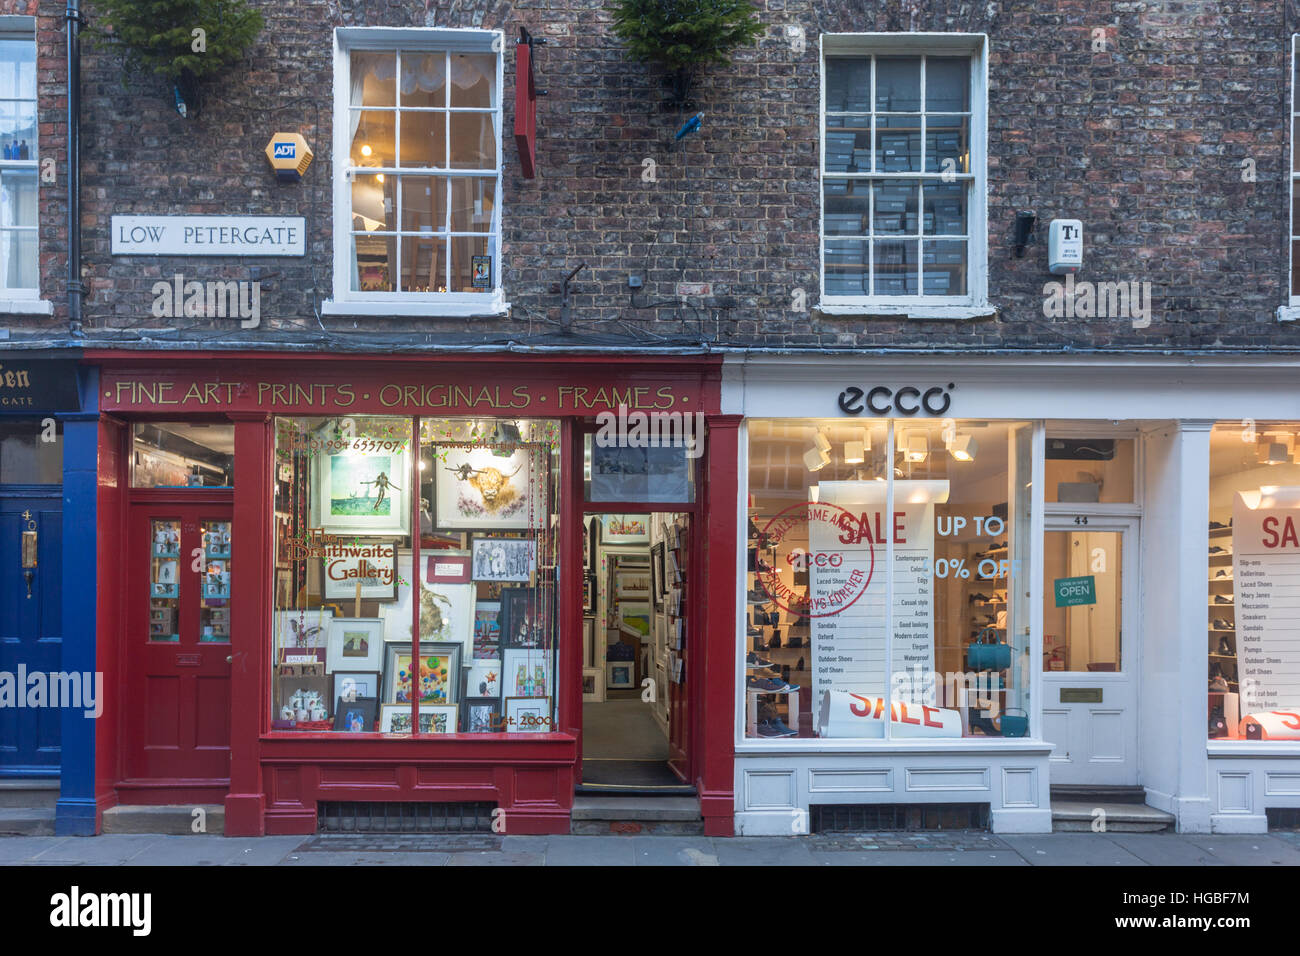 Shop front dans la pagaille, célèbre rue commerçante médiévale dans le centre-ville de York, Royaume-Uni Banque D'Images